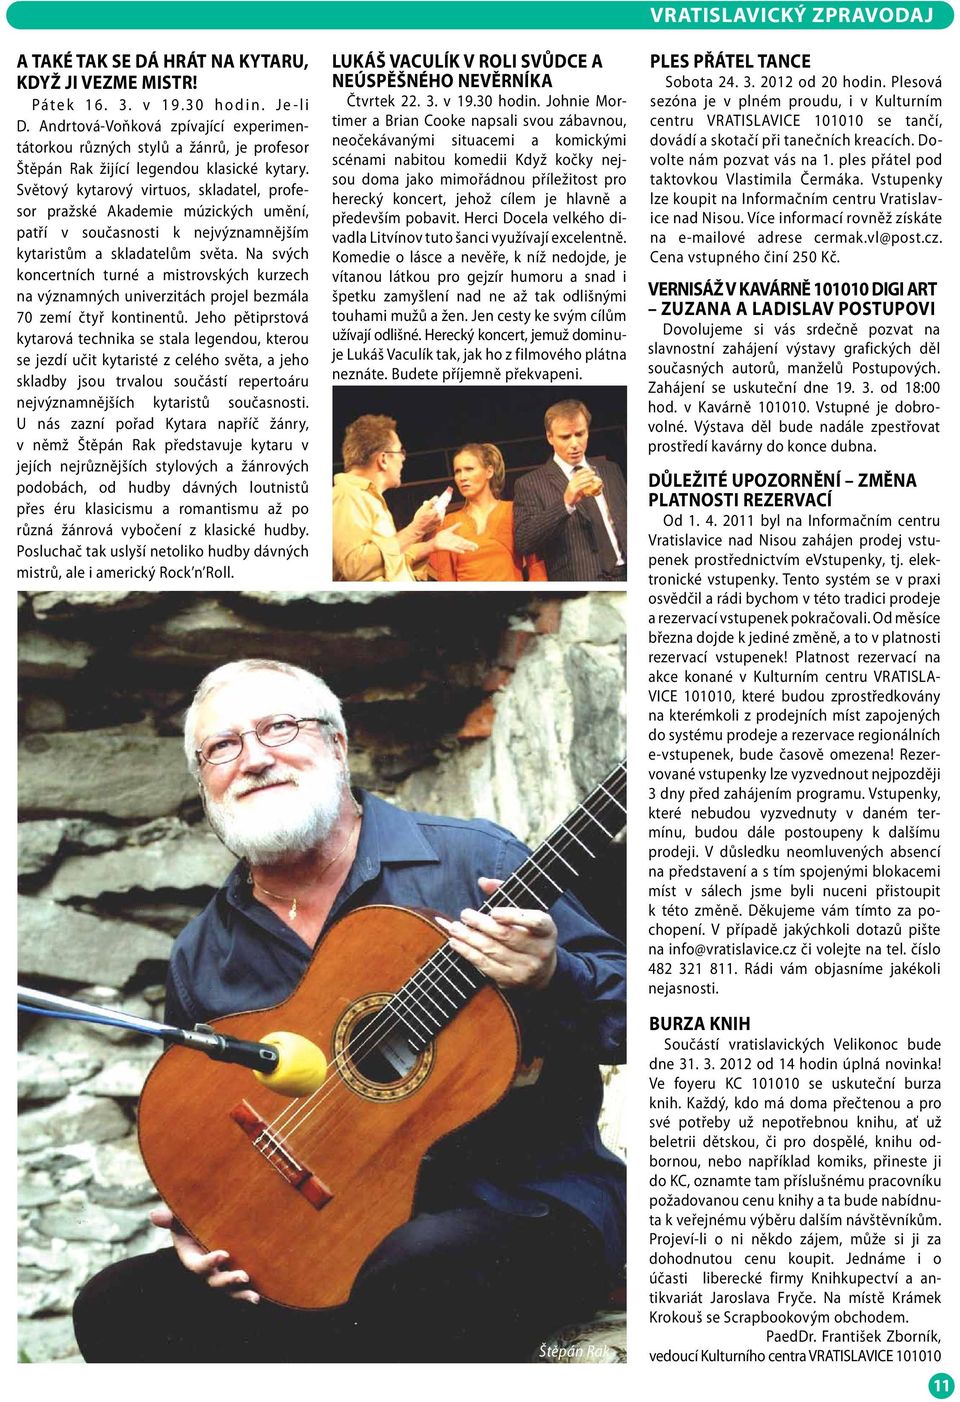 Světový kytarový virtuos, skladatel, profesor pražské Akademie múzických umění, patří v současnosti k nejvýznamnějším kytaristům a skladatelům světa.